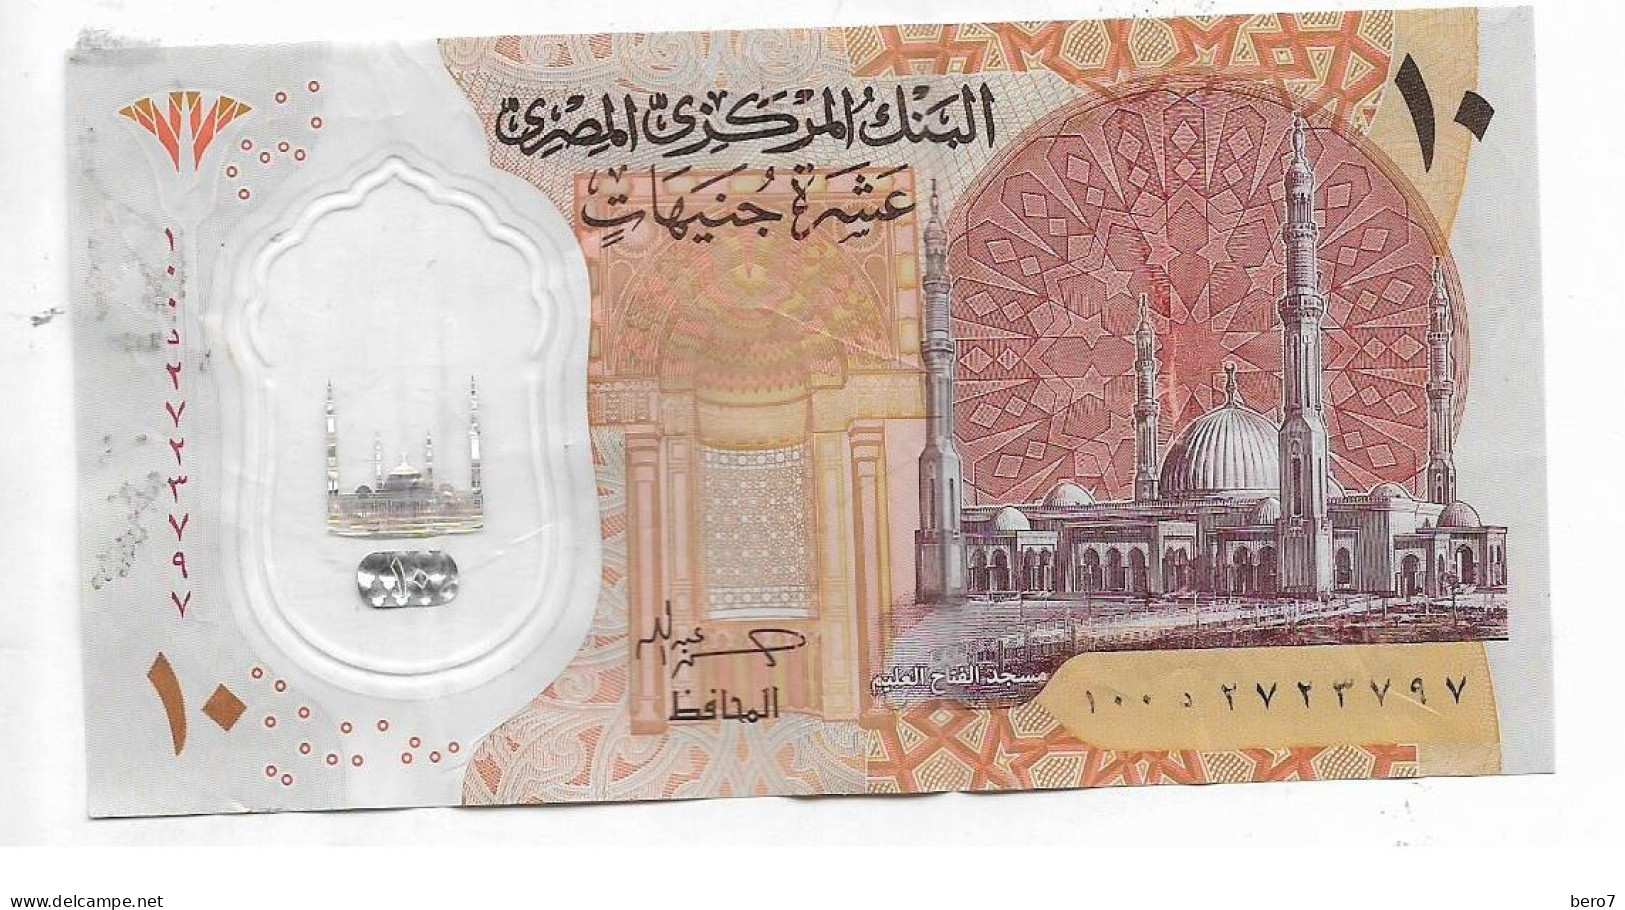 Egypt 10 Pounds Polymer Replacement - Circuated Hassan Abdallah [Circulated]  (Egypte) (Egitto) (Ägypten) (Egipto) - Egypt